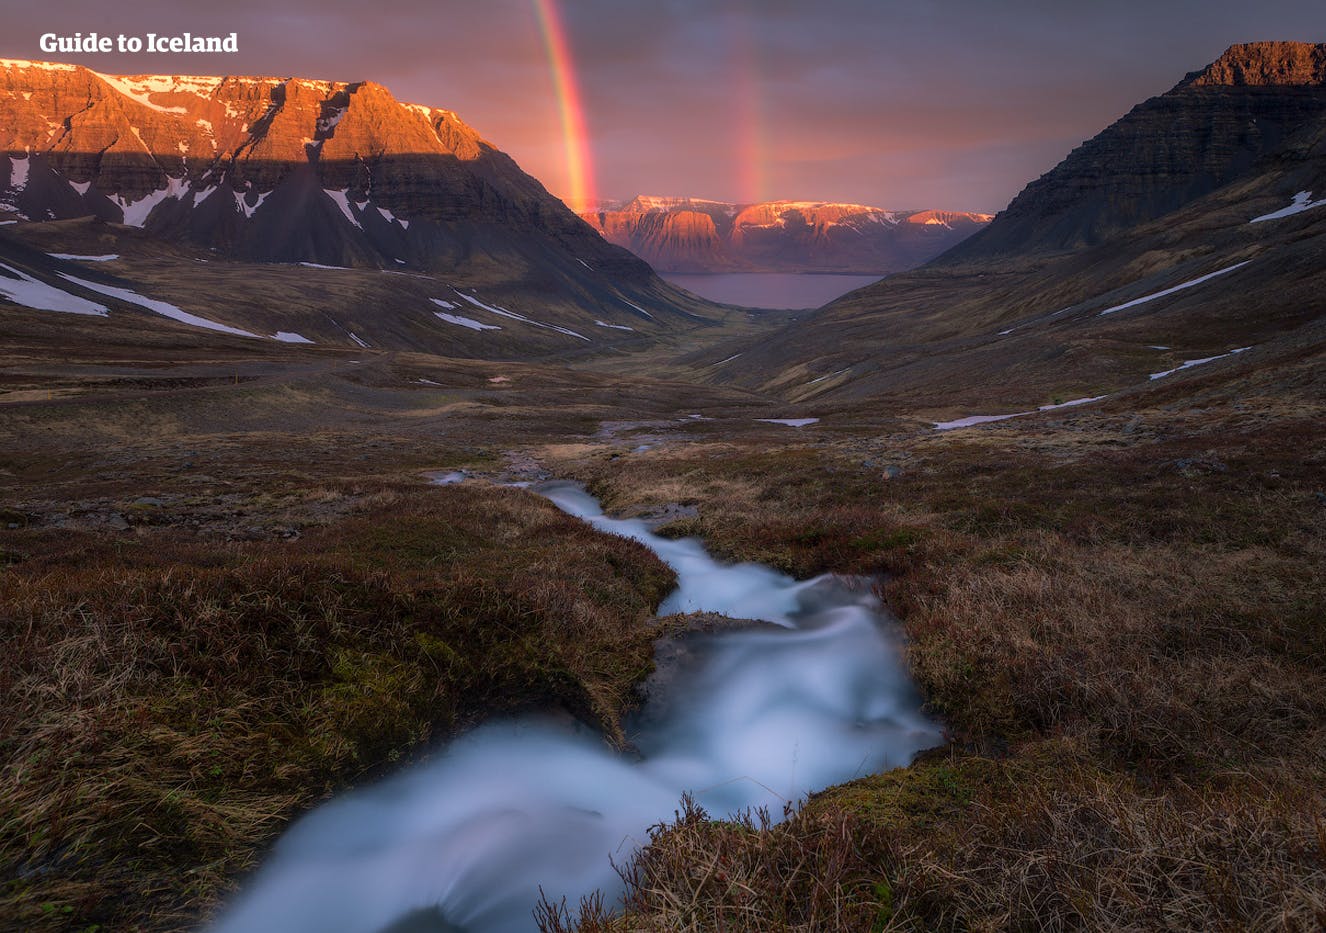 Een beekje stroomt door een vallei in de IJslandse Westfjorden. Op de achtergrond is een regenboog zichtbaar.